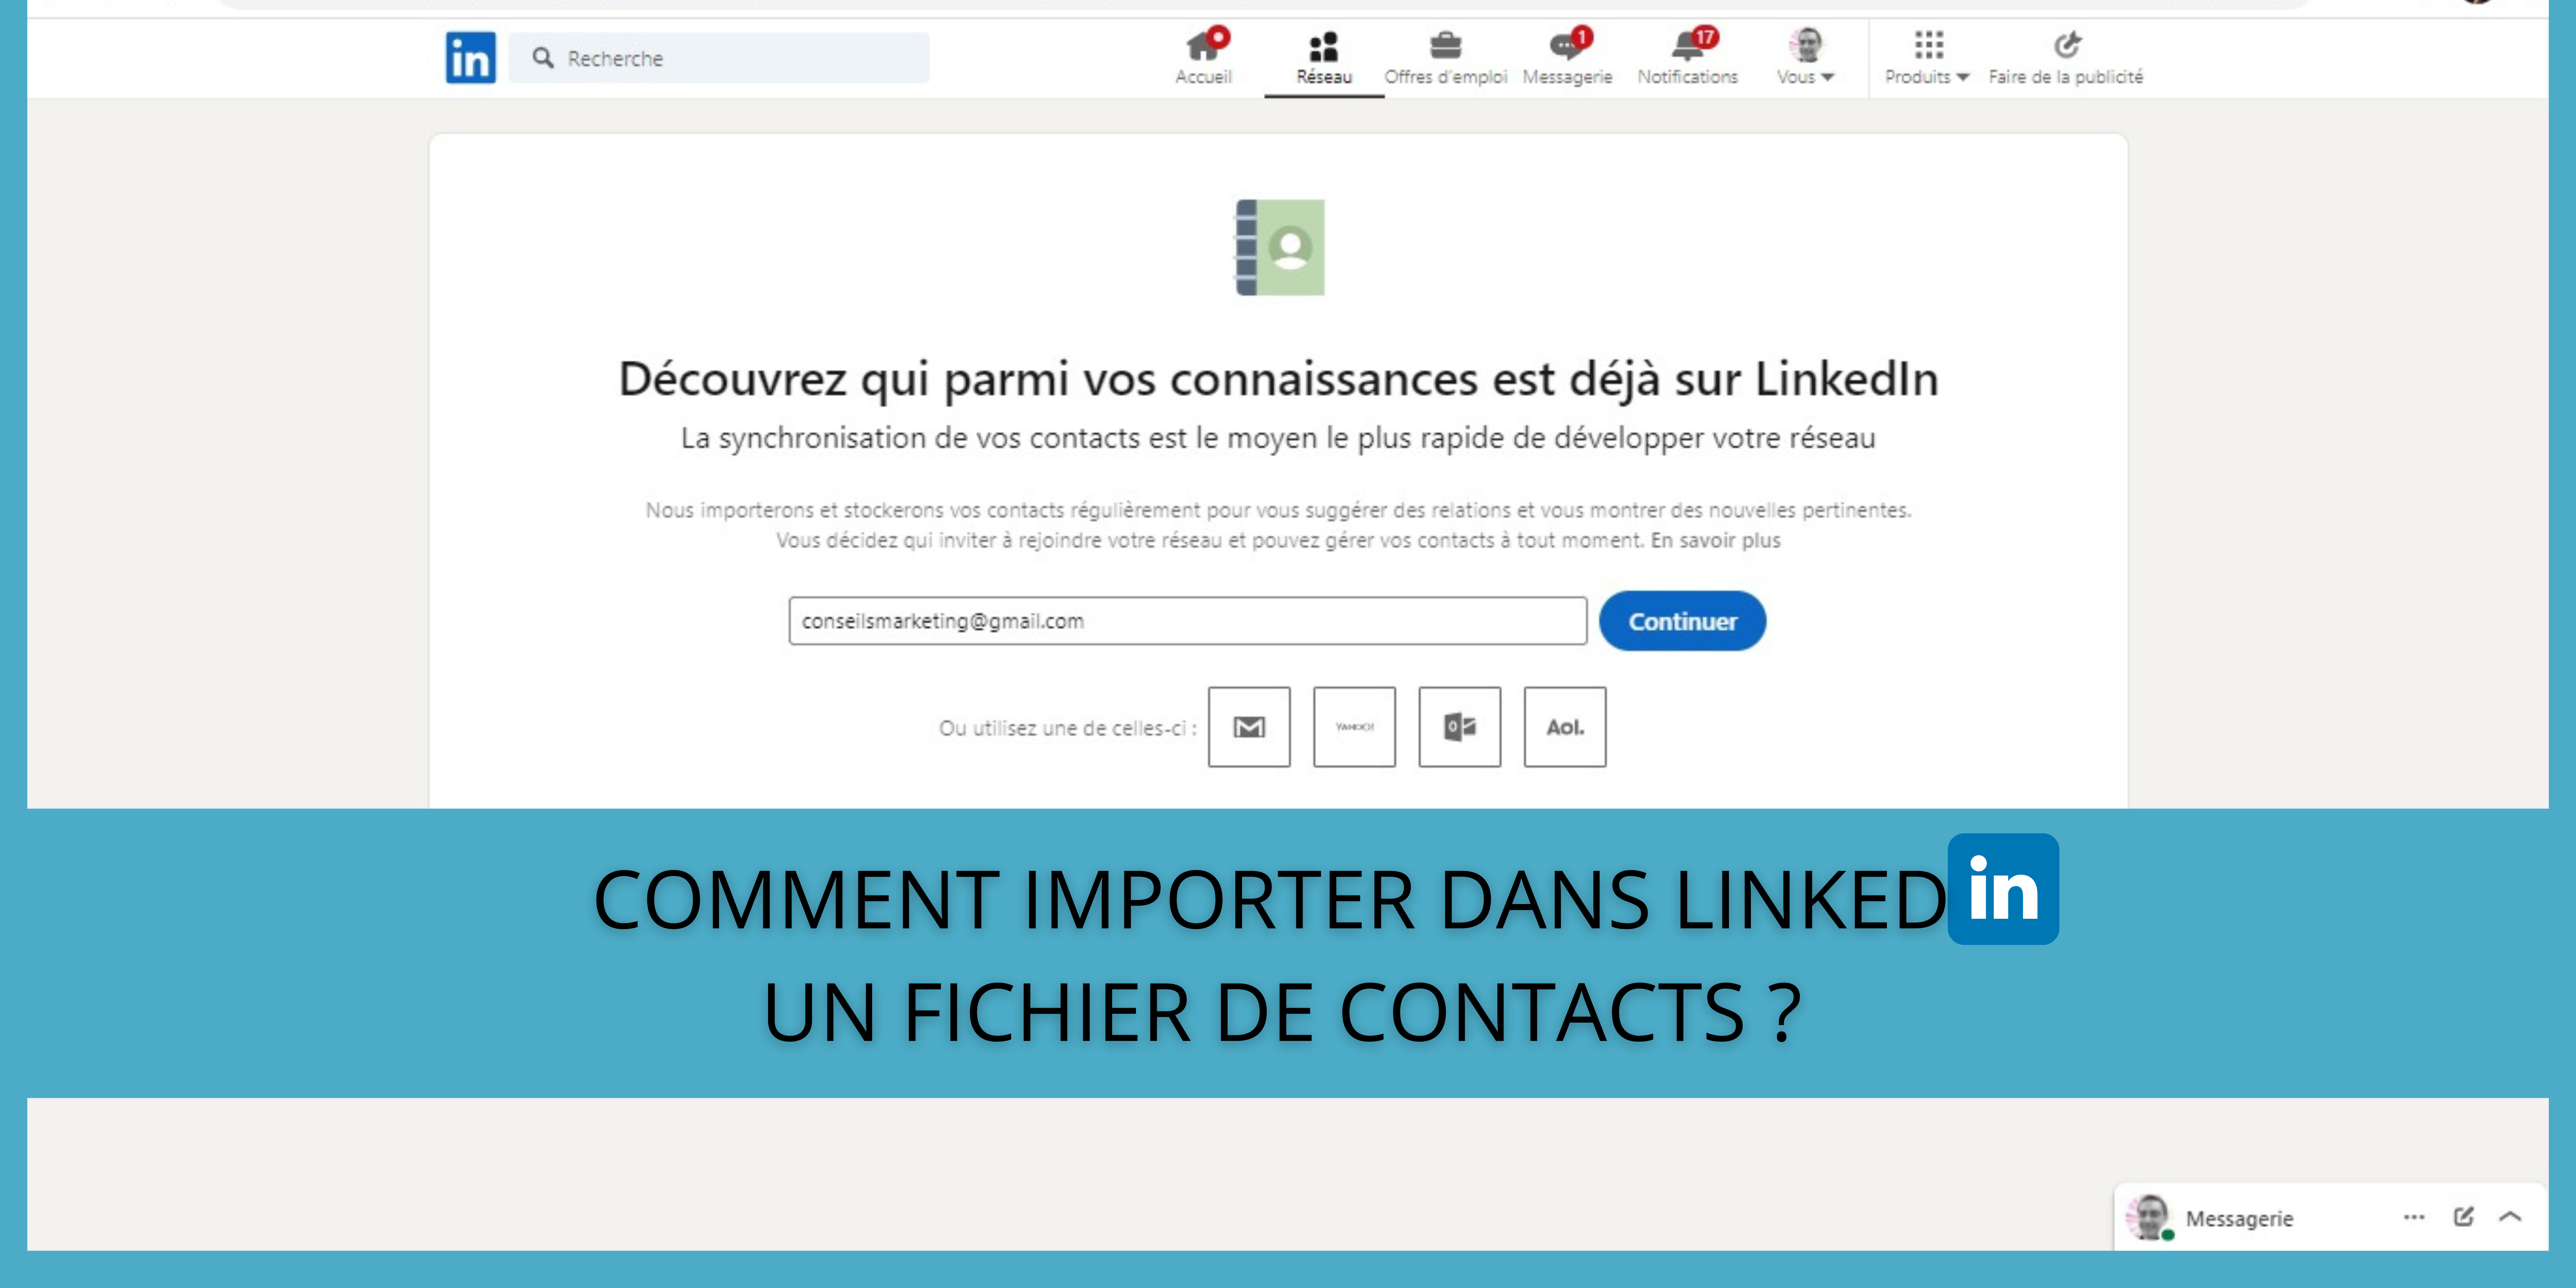 Comment importer dans LinkedIn un fichier de contacts ? 165